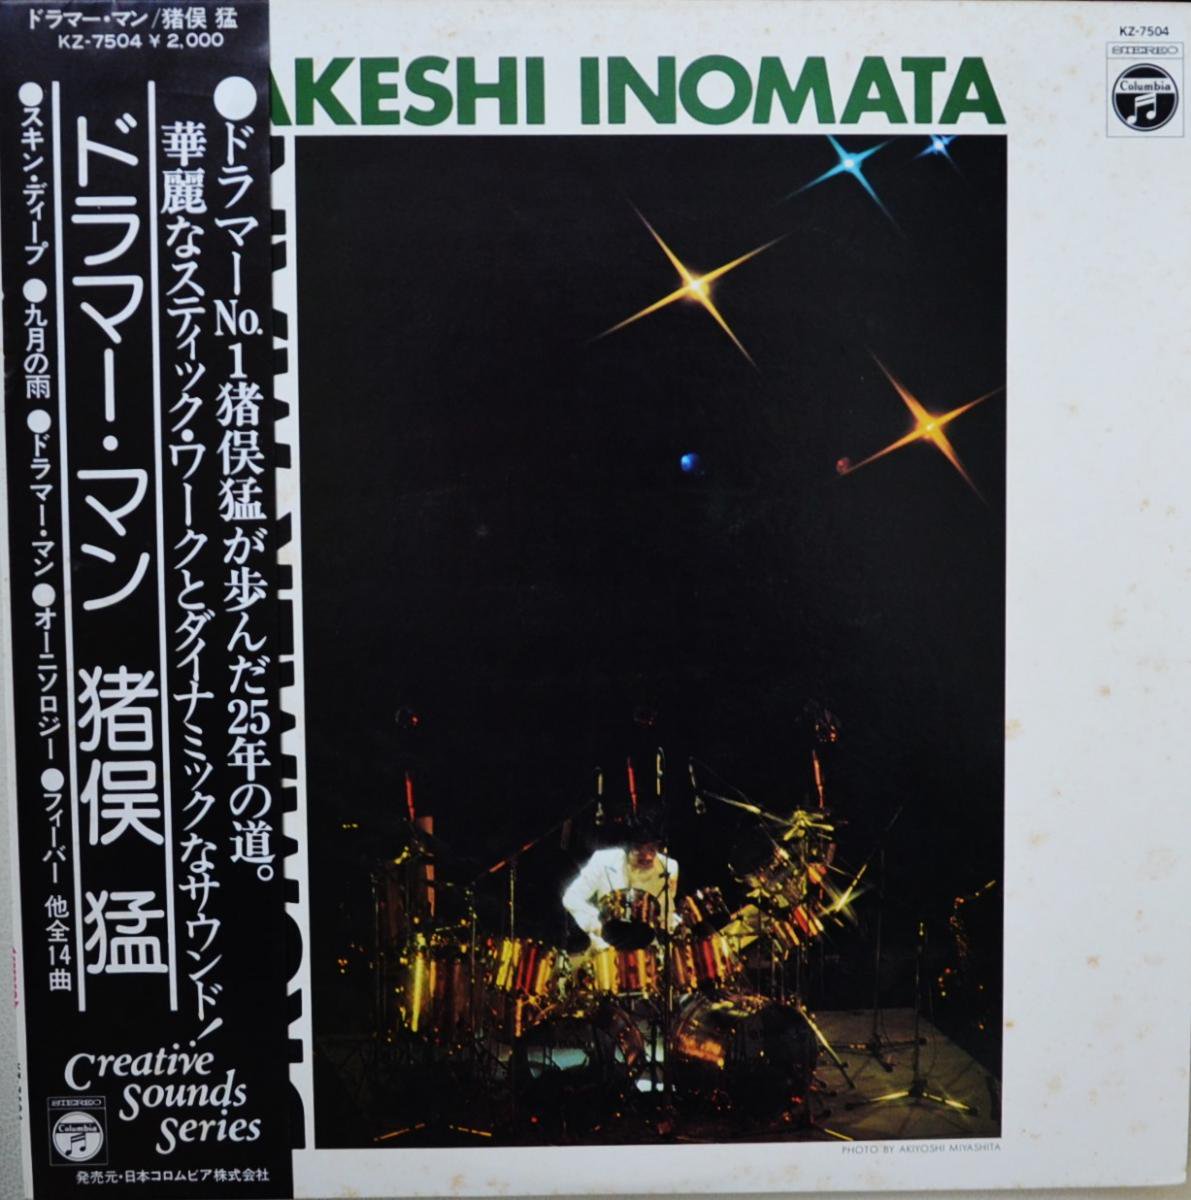 猪俣猛 TAKESHI INOMATA / ドラマー・マン DRUMMER MAN (LP) - HIP 